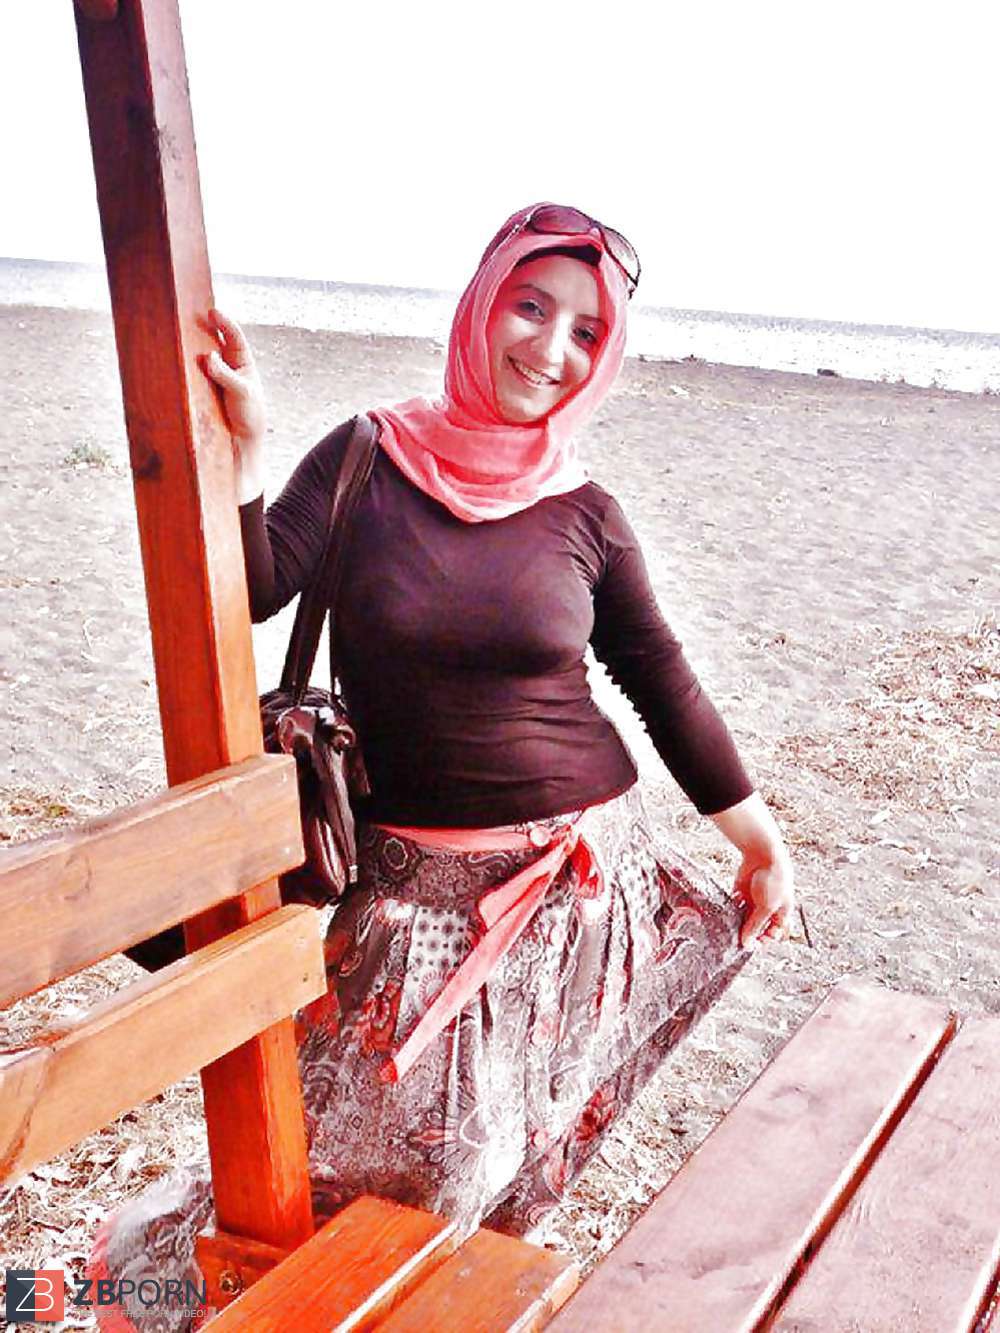 Turkish Turbanli Hijab Arab Asian Guzeller Zb Porn